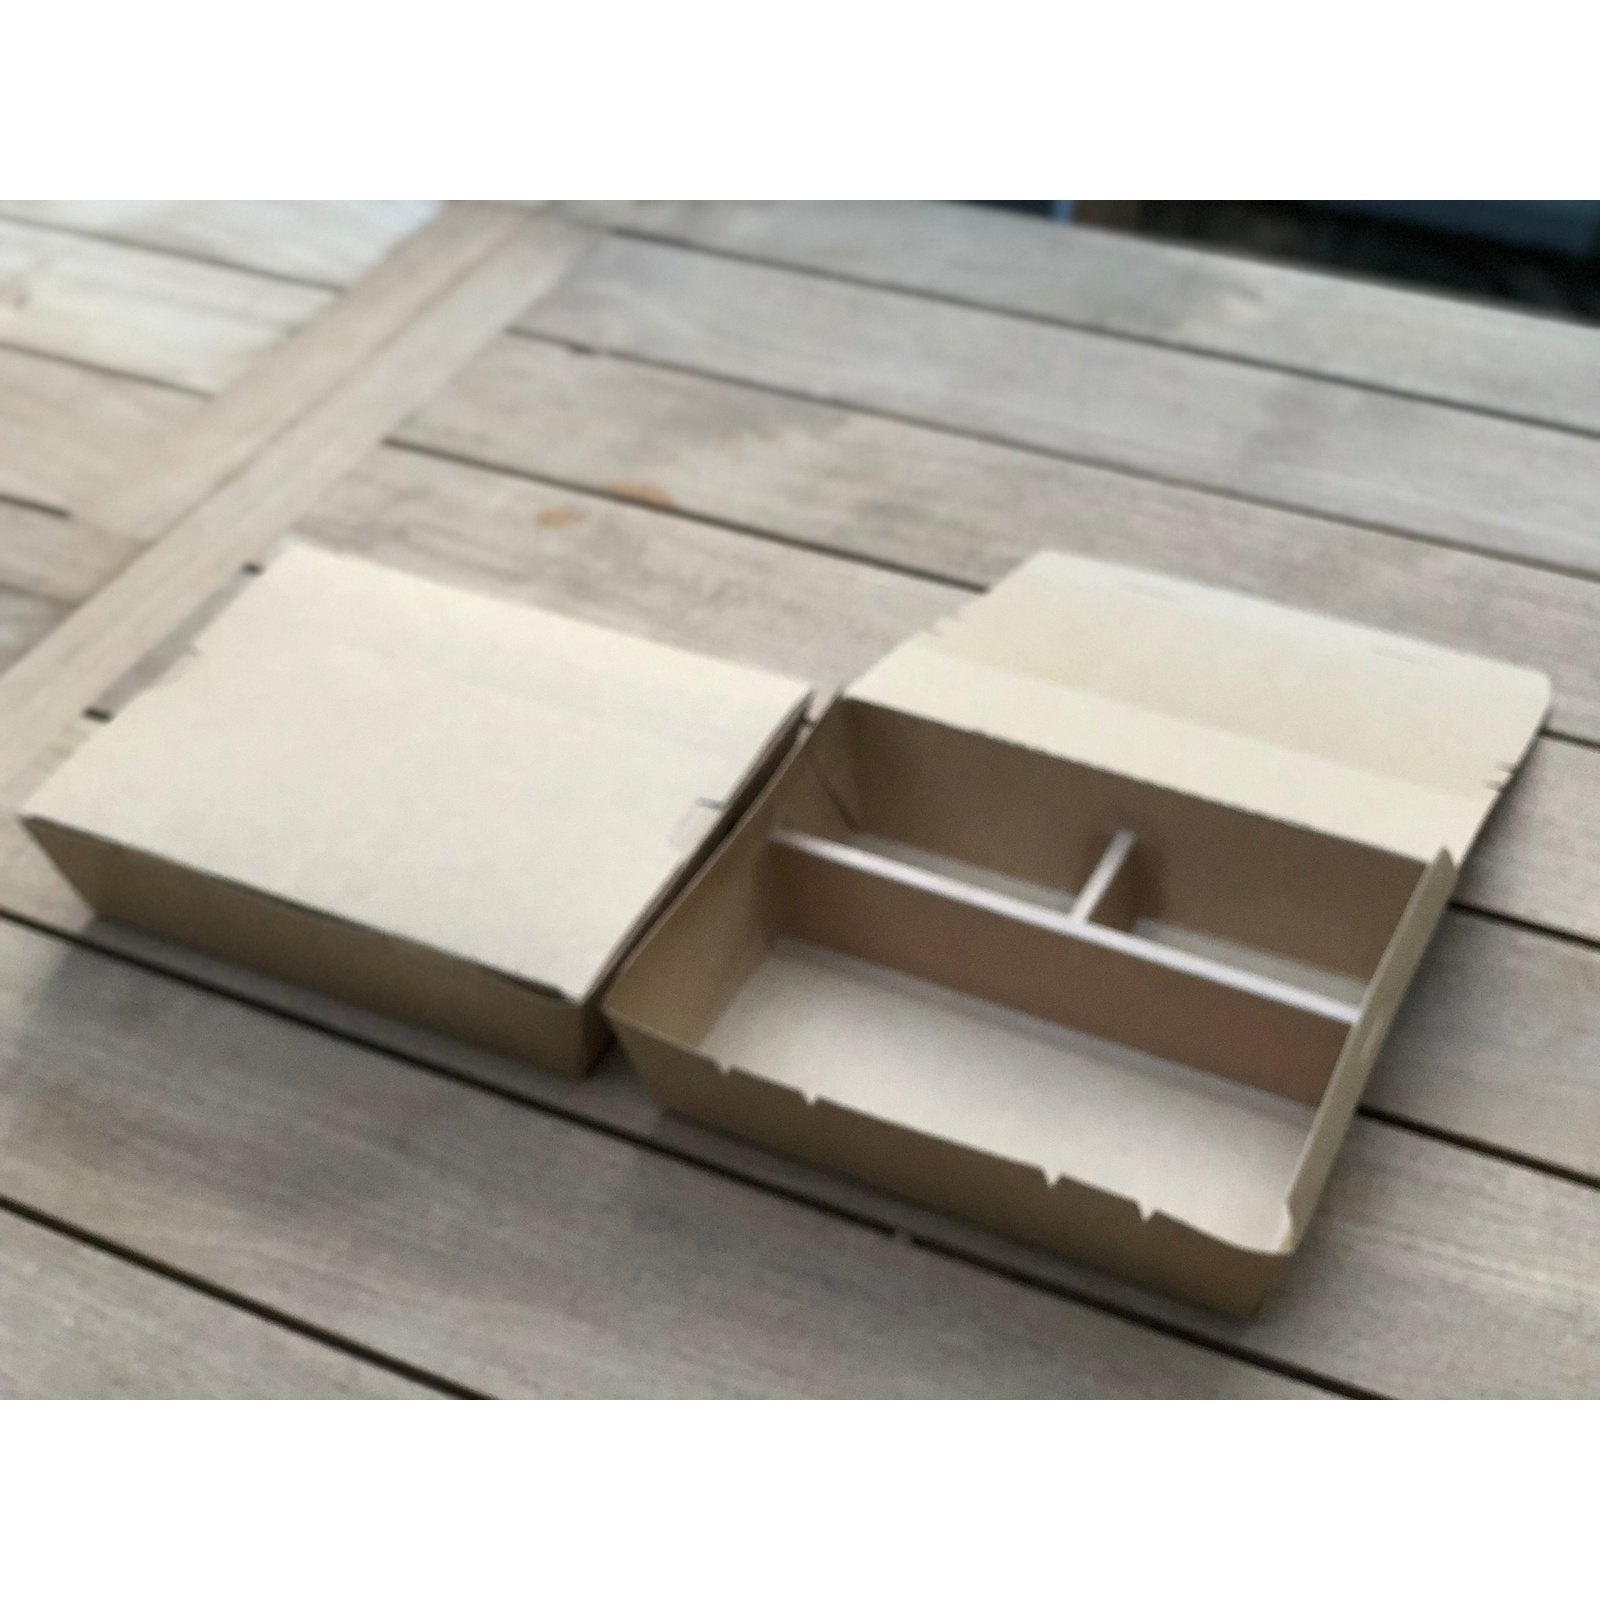 Press Board Bento Box